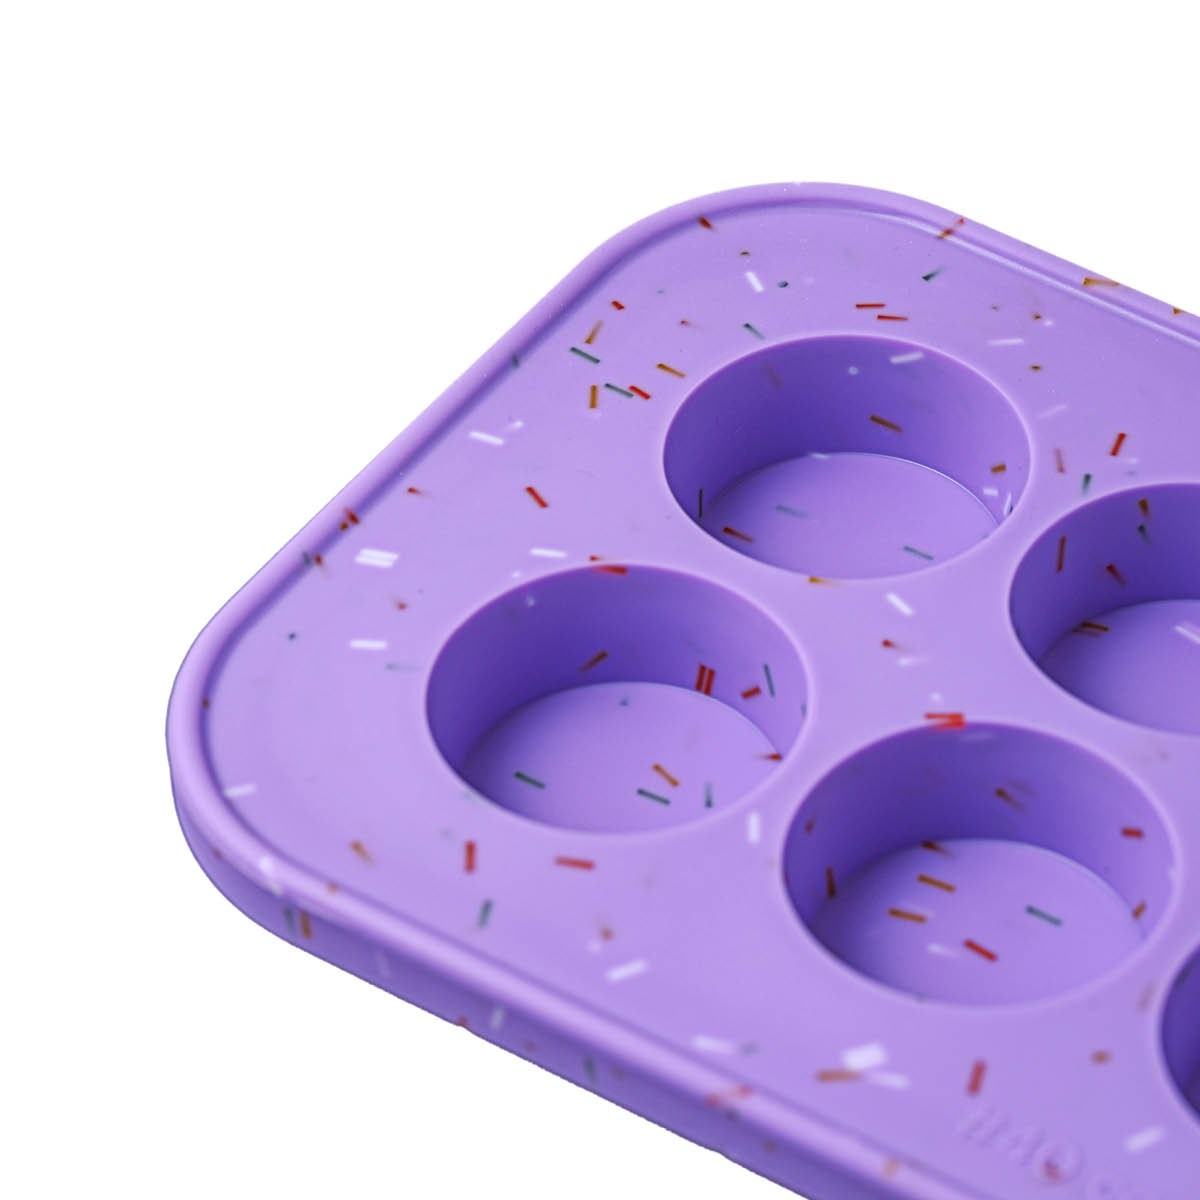 Souper Cubes, Cookie silikonform 2pk lil